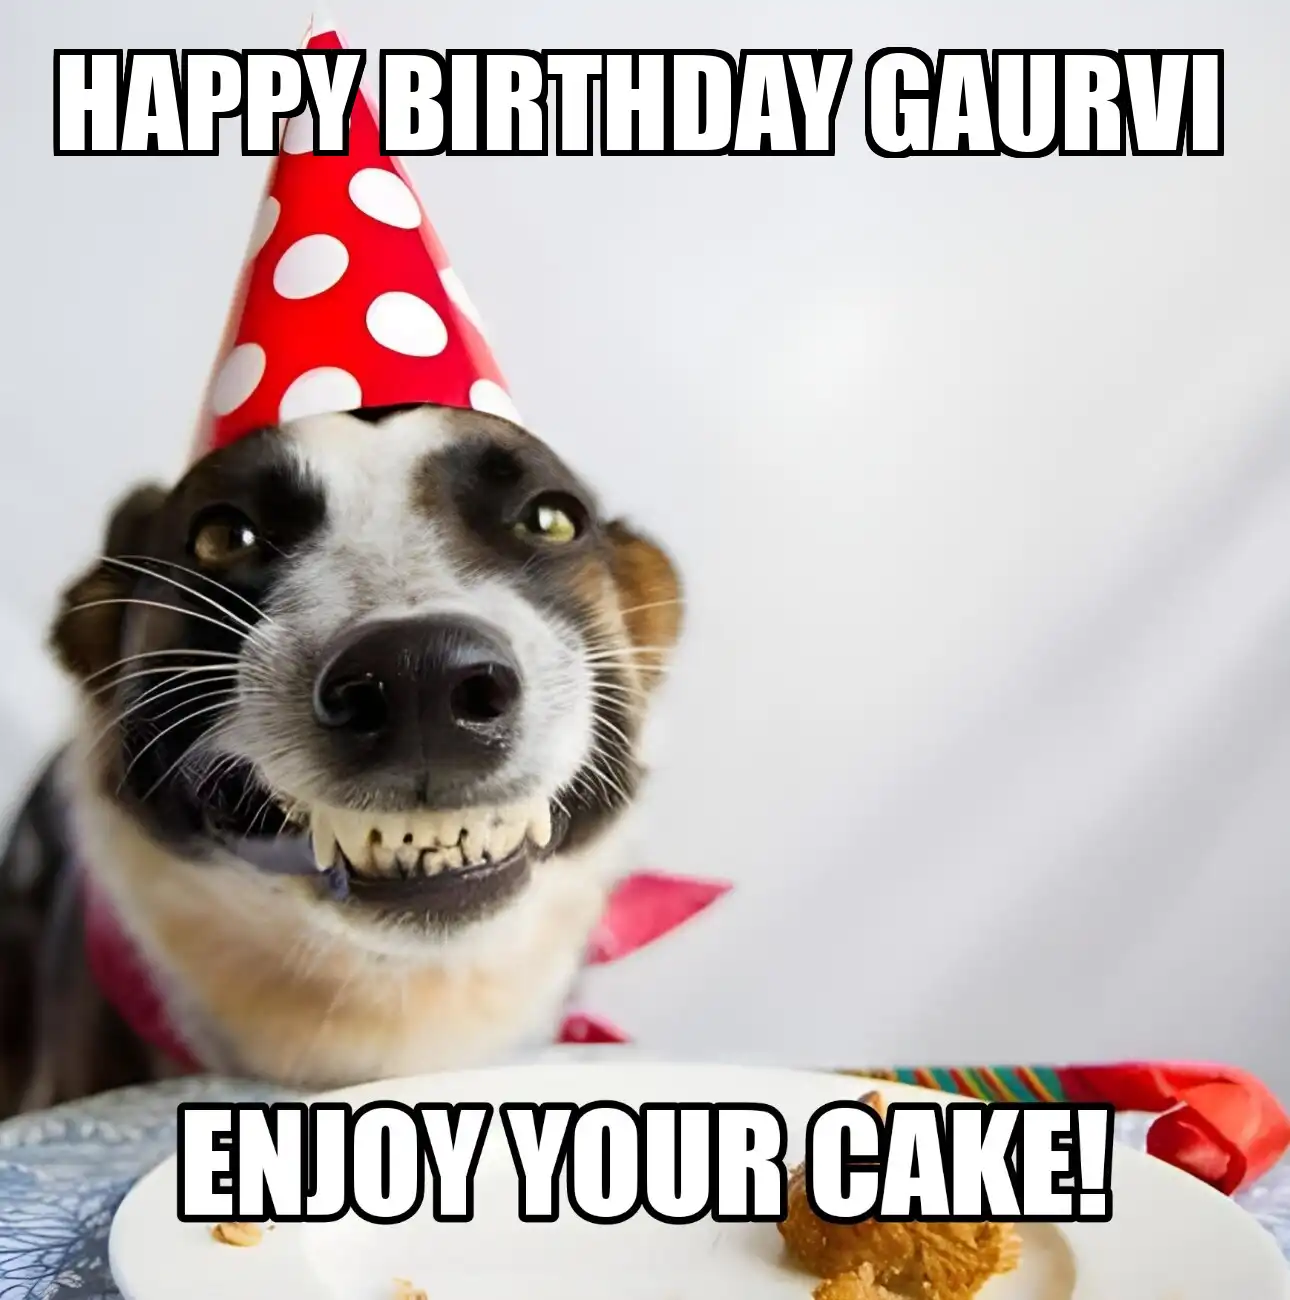 Happy Birthday Gaurvi Enjoy Your Cake Dog Meme